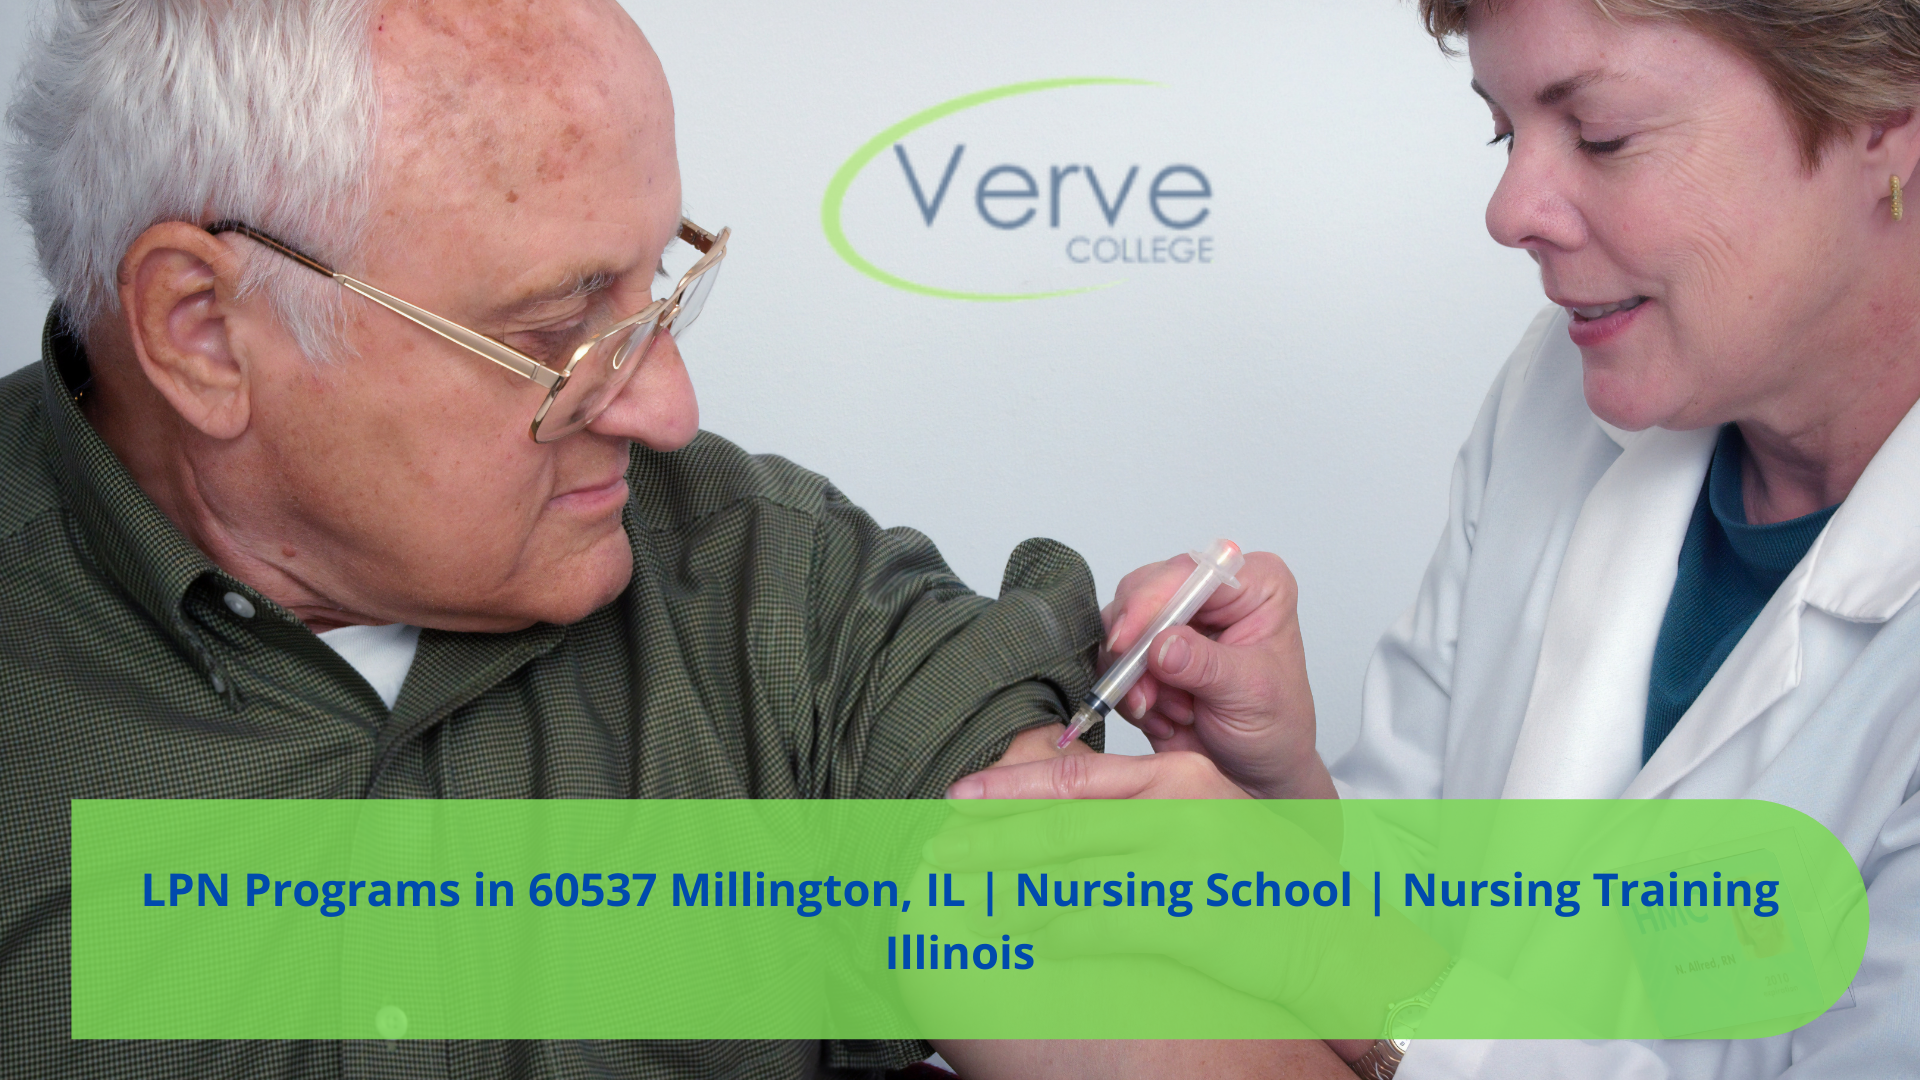 LPN Programs in 60537 Millington, IL | Nursing School | Nursing Training Illinois